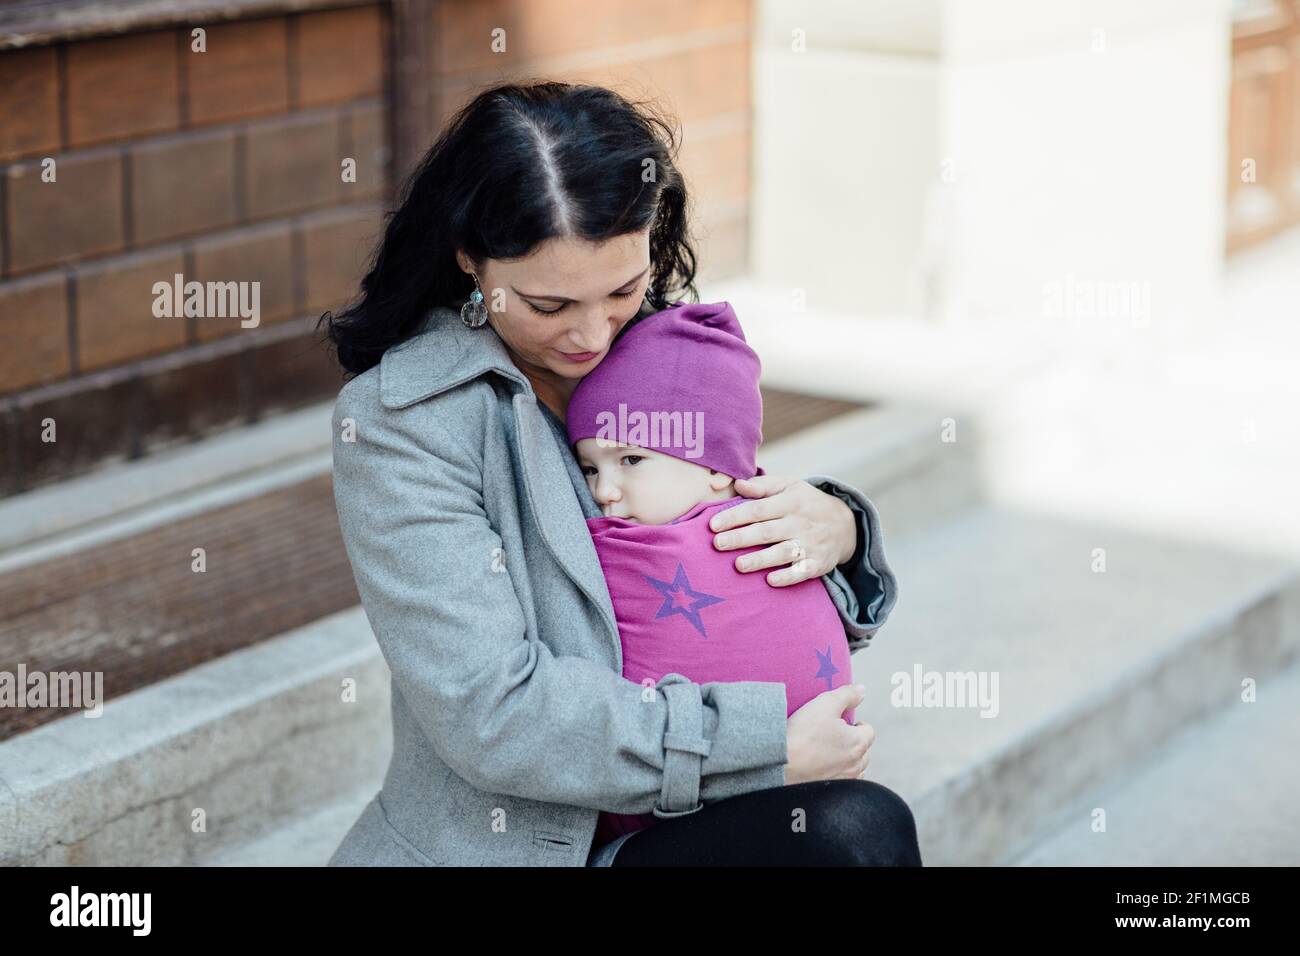 Ritratto della madre di babyweing trendy che porta il suo bambino nel città Foto Stock